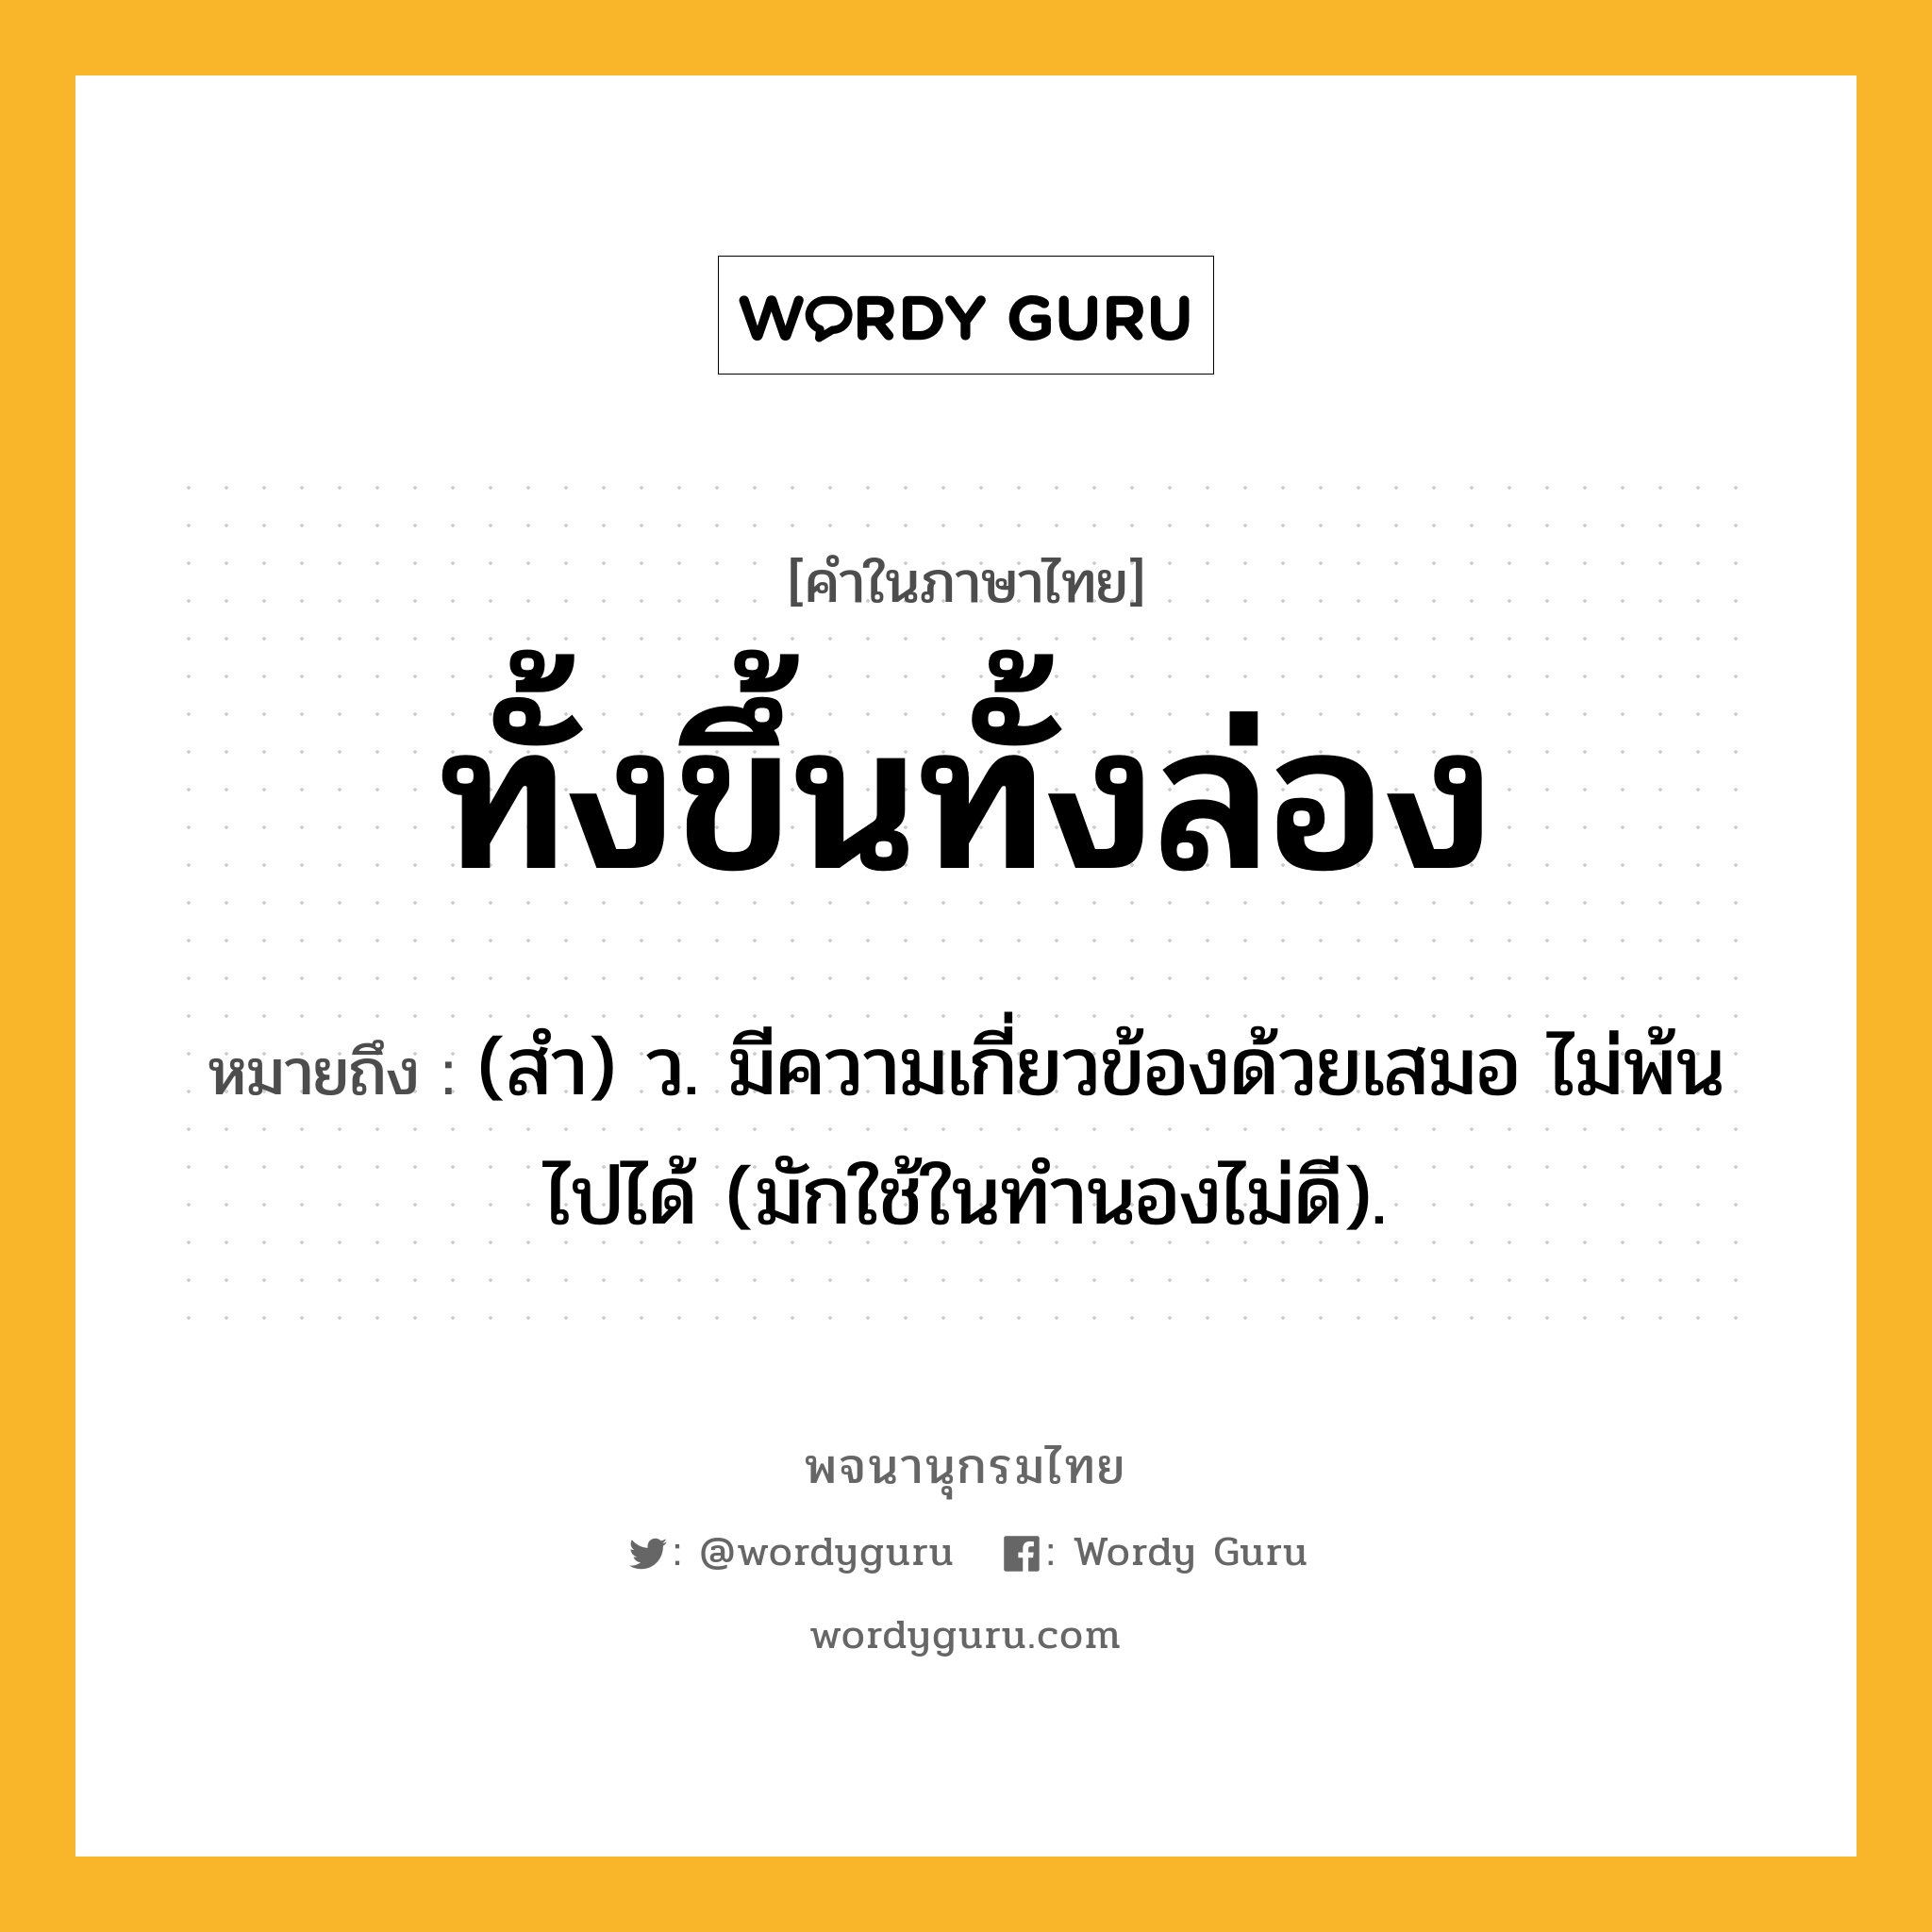 ทั้งขึ้นทั้งล่อง ความหมาย หมายถึงอะไร?, คำในภาษาไทย ทั้งขึ้นทั้งล่อง หมายถึง (สํา) ว. มีความเกี่ยวข้องด้วยเสมอ ไม่พ้นไปได้ (มักใช้ในทํานองไม่ดี).